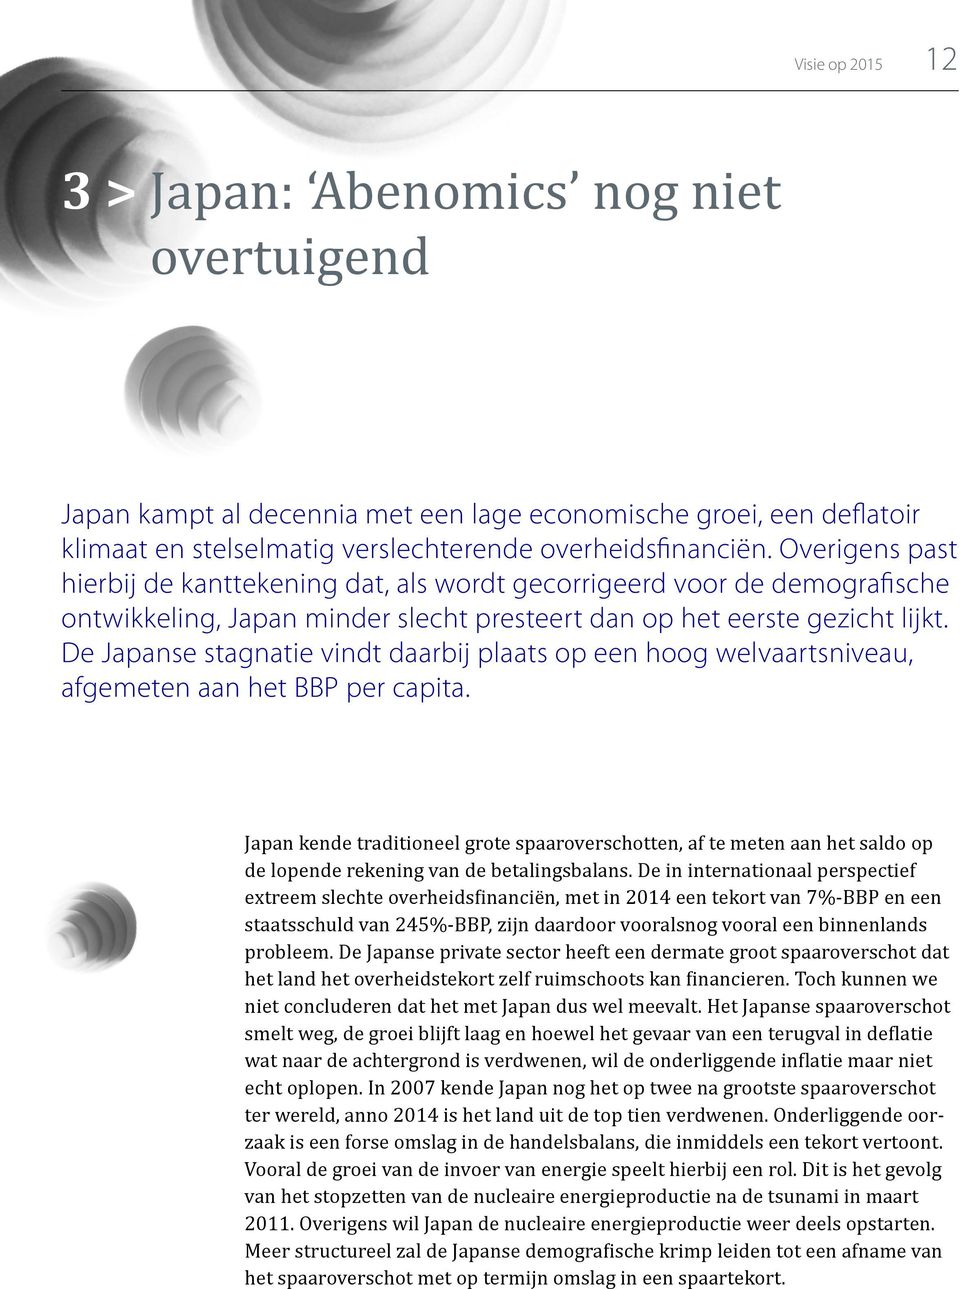 De Japanse stagnatie vindt daarbij plaats op een hoog welvaarts niveau, afgemeten aan het BBP per capita.